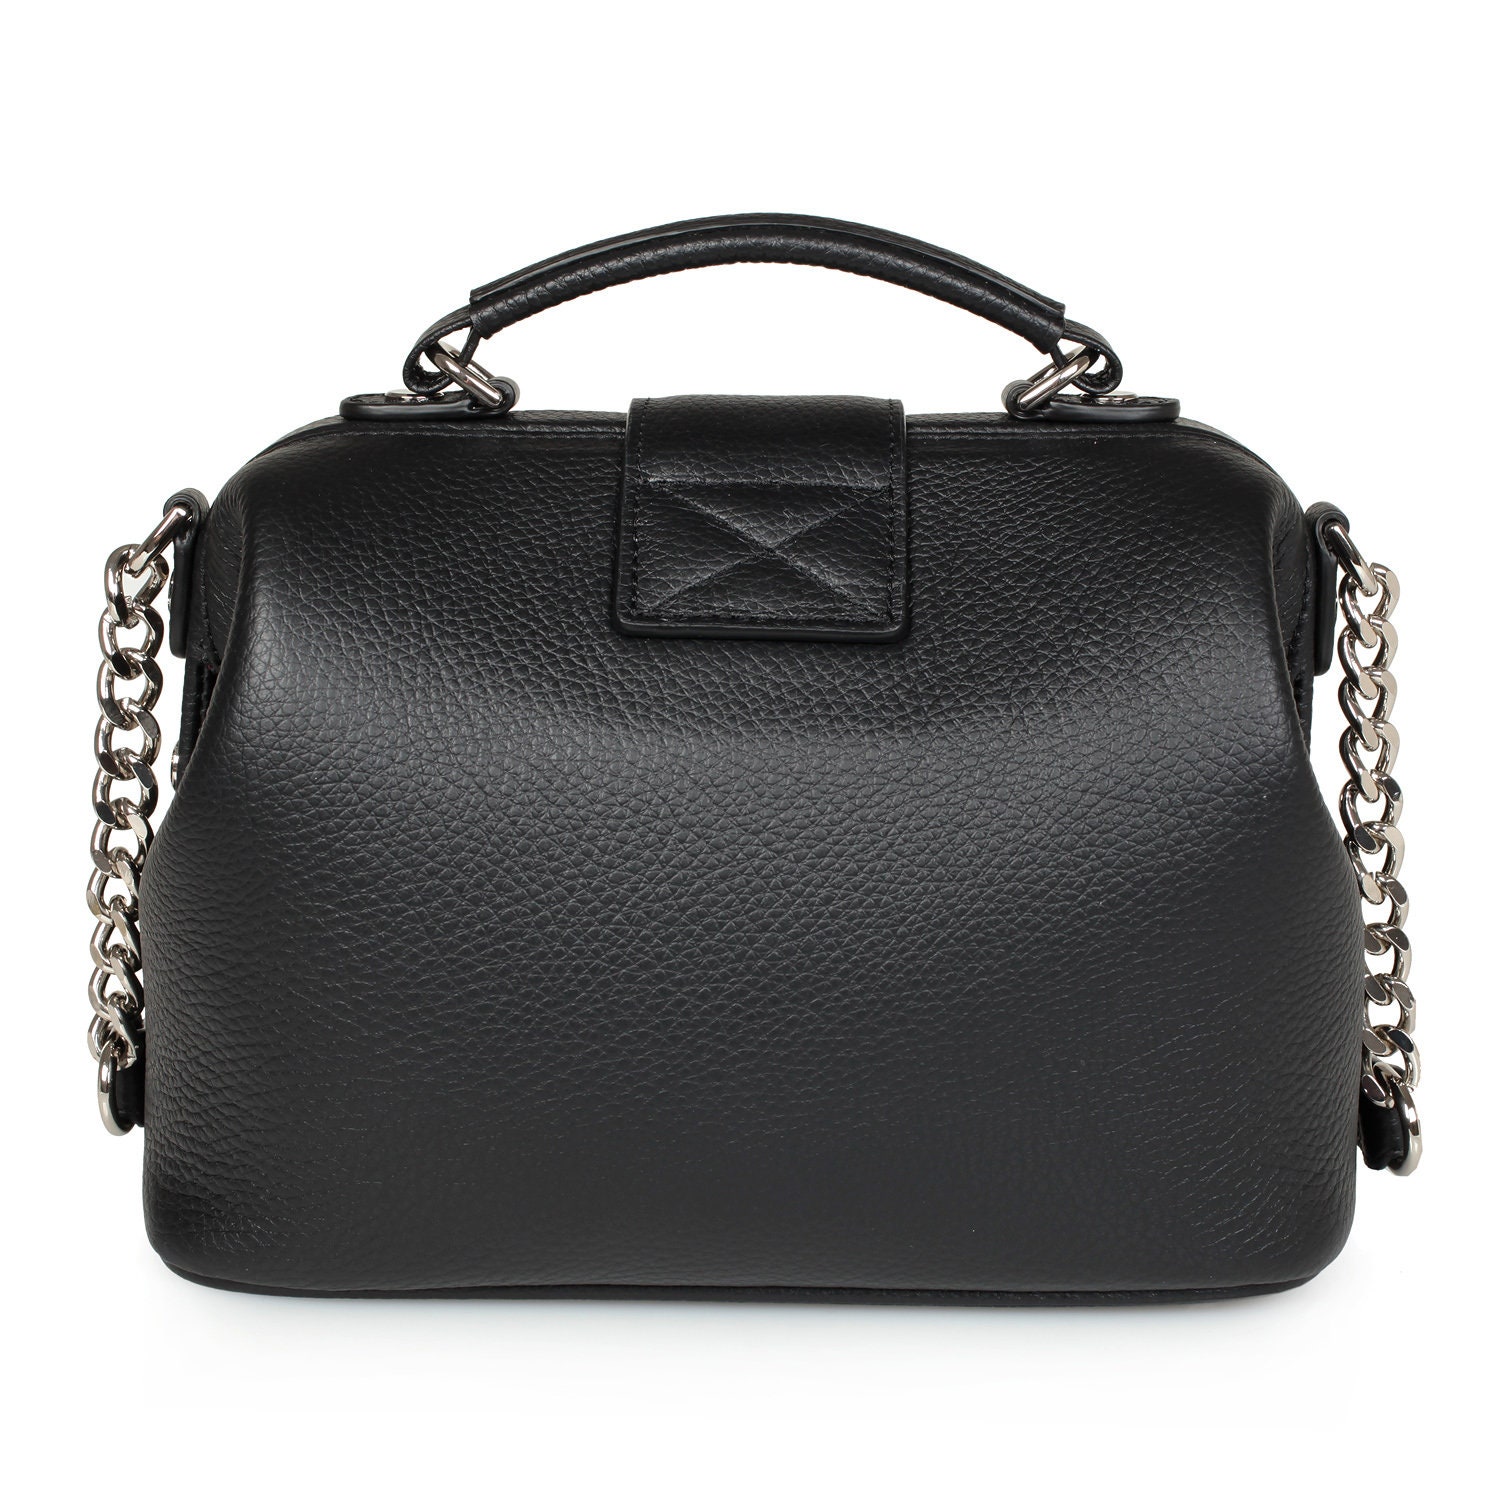 Leather Doctor Bag for Women Black Suede Leather Shoulder - Etsy